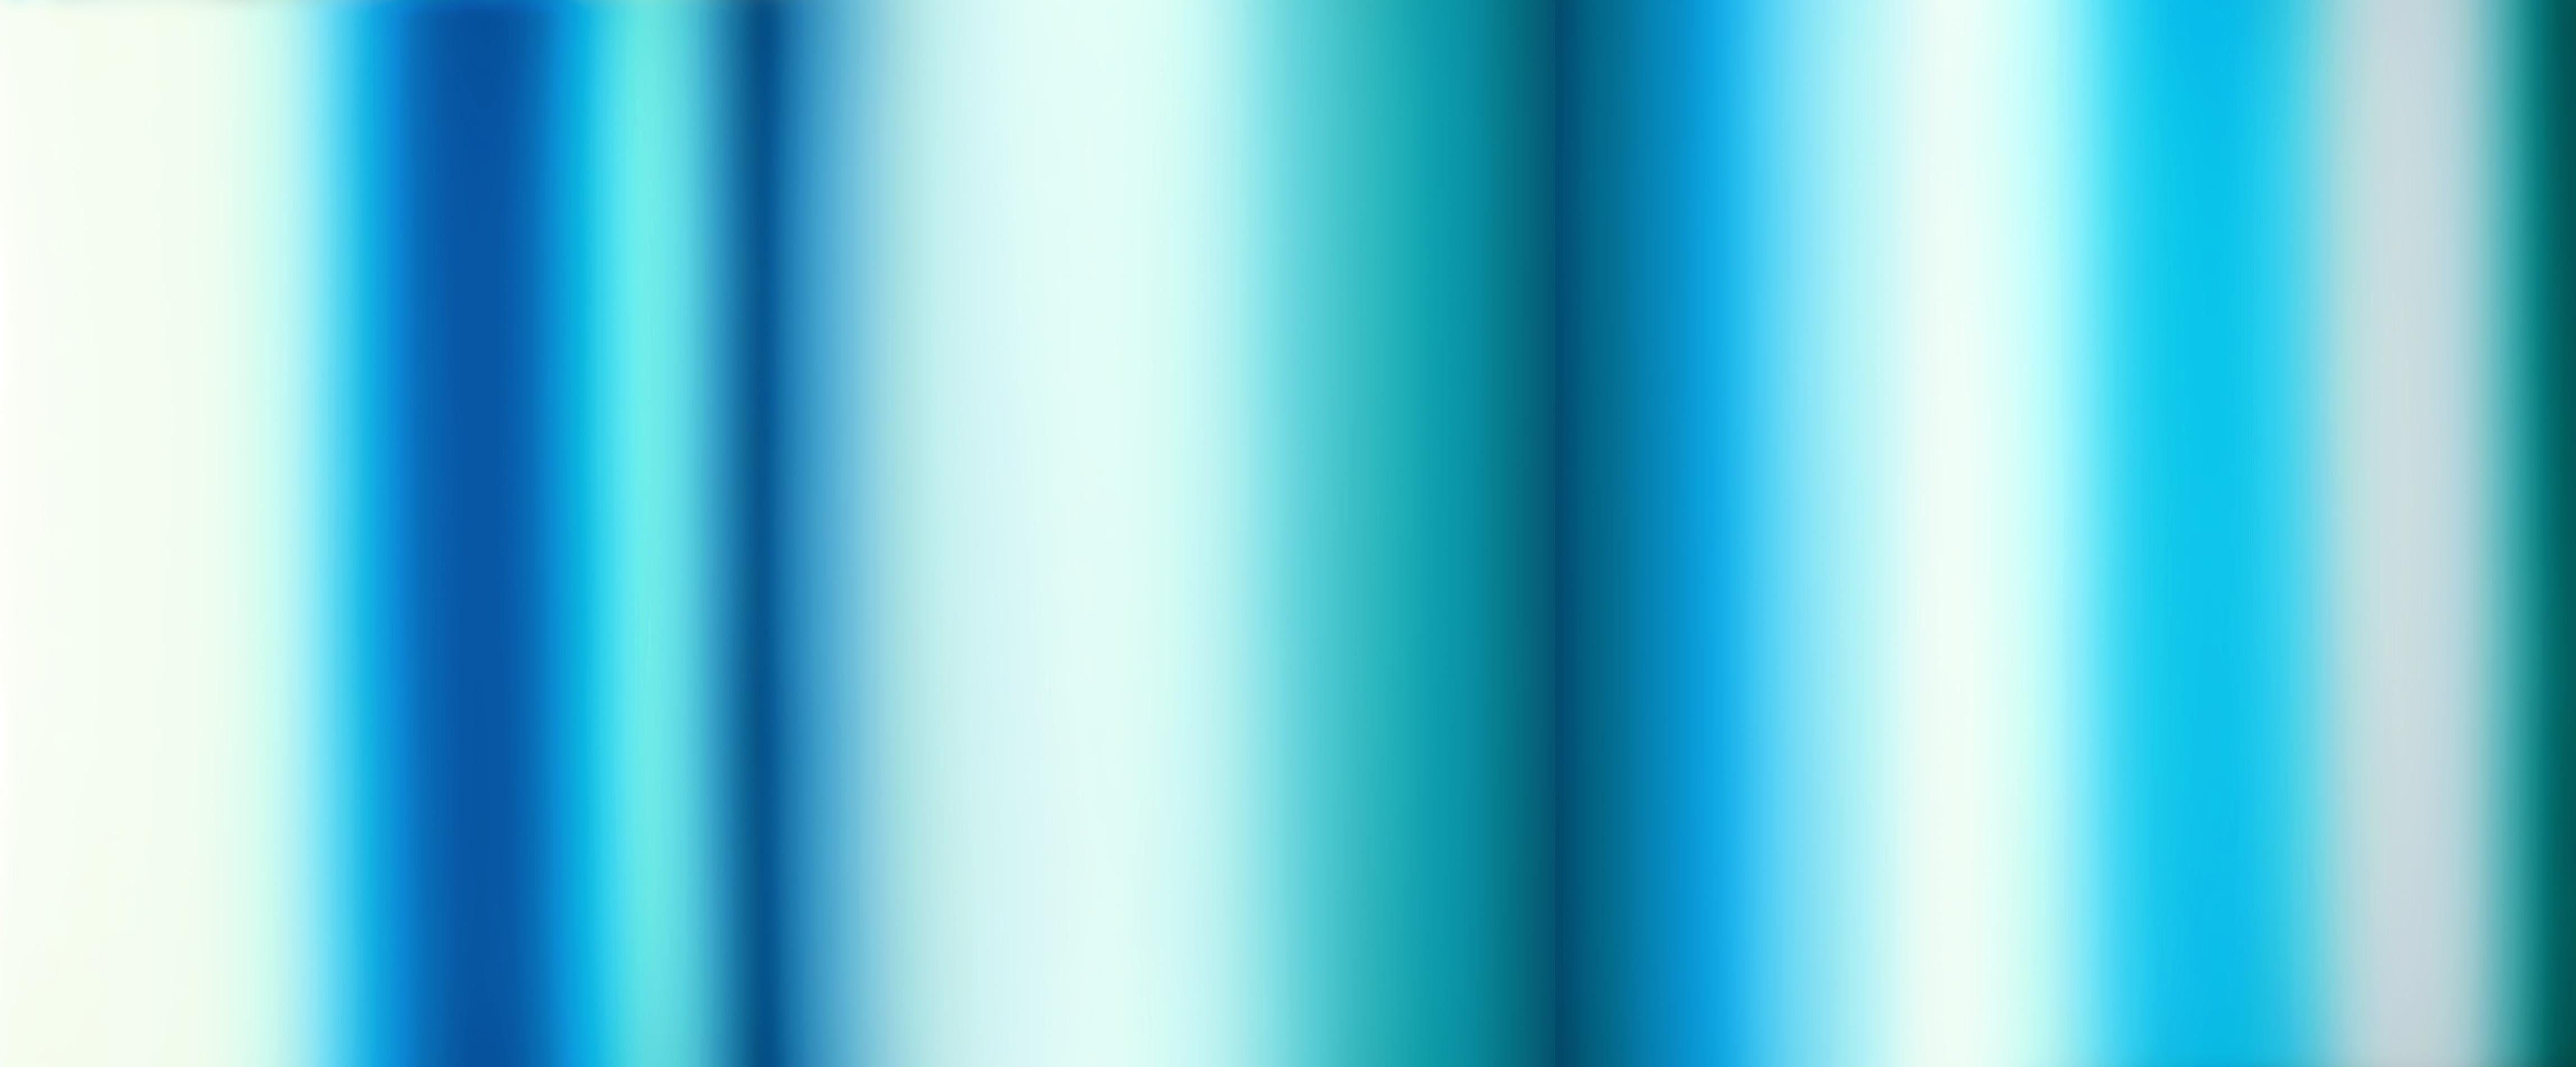 Abstract Painting Patrick Dintino - Aquarelle blanche - grande peinture à l'huile abstraite à rayures bleues et blanches en mélange de couleurs